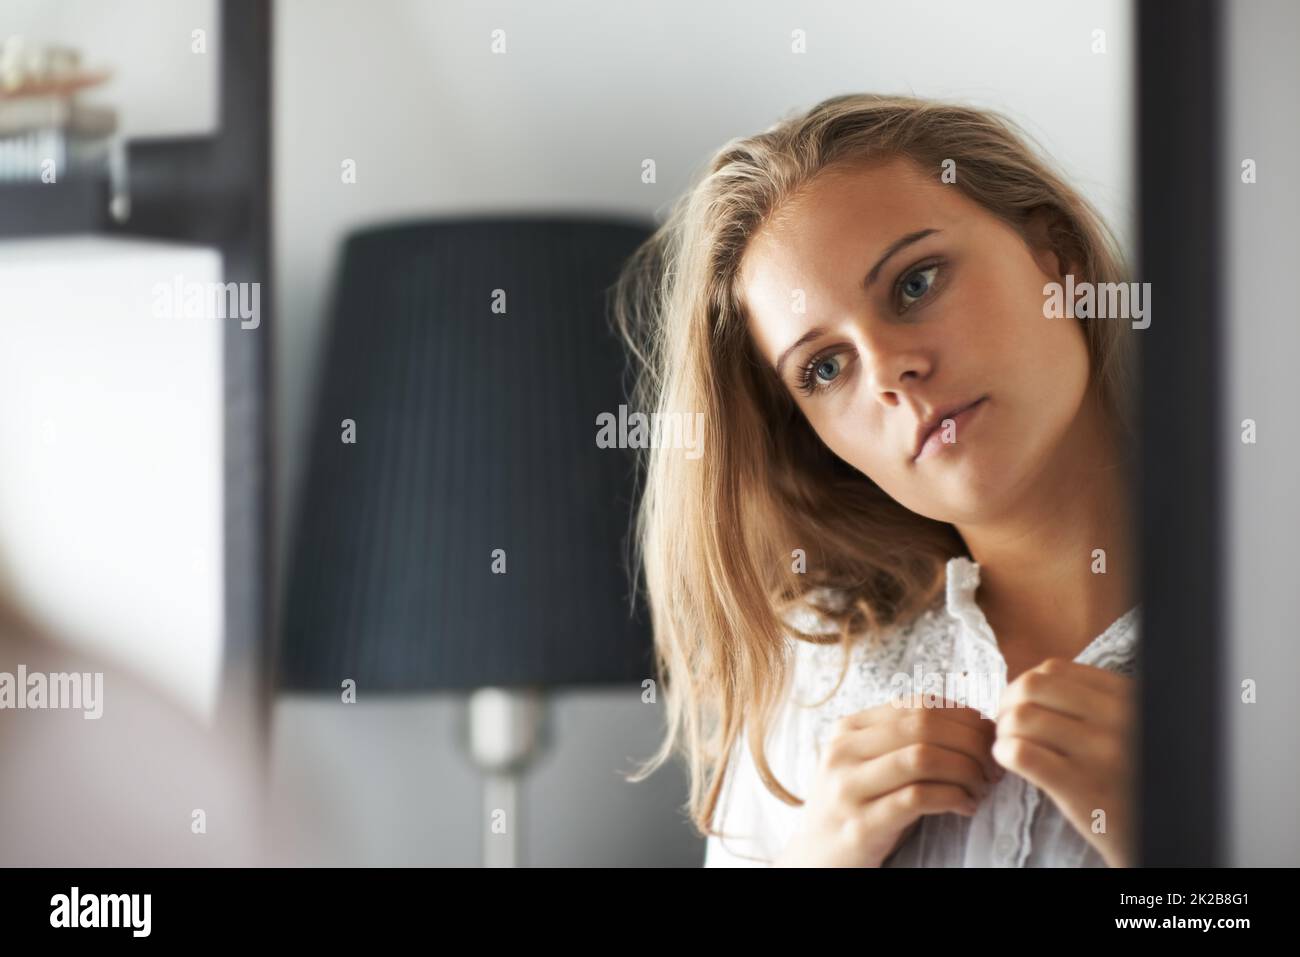 Ihre Reflexion einnehmend. Eine junge Frau, die sich anzieht, während sie in den Spiegel schaut. Stockfoto